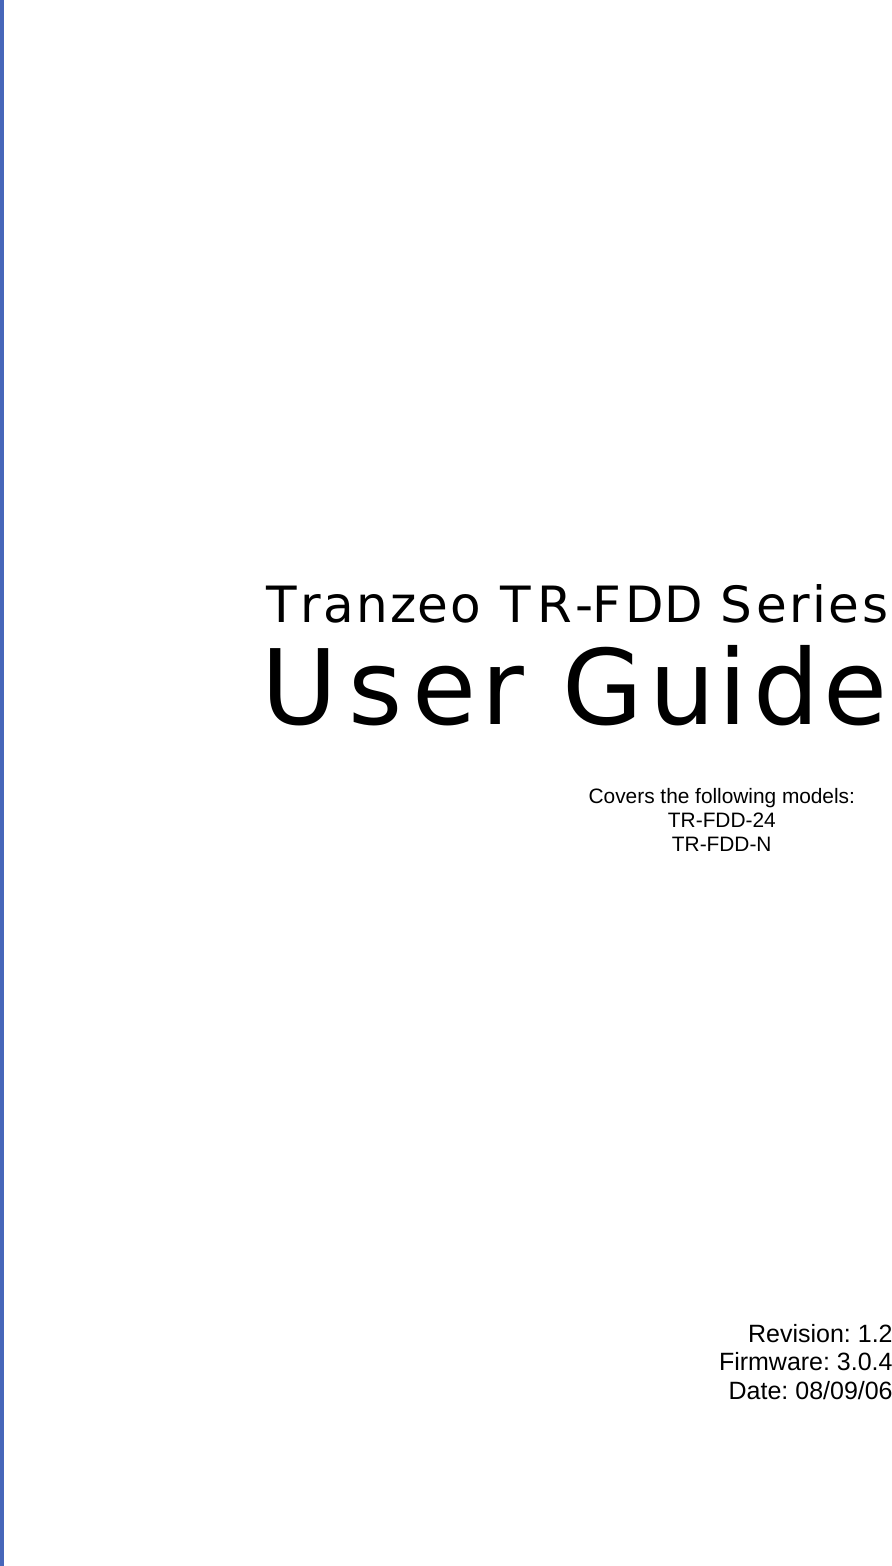  TRANZEO TR-FDD Revision: 1.2 Firmware: 3.0.4 Date: 08/09/06 Tranzeo TR-FDD Series User Guide Covers the following models:   TR-FDD-24 TR-FDD-N 